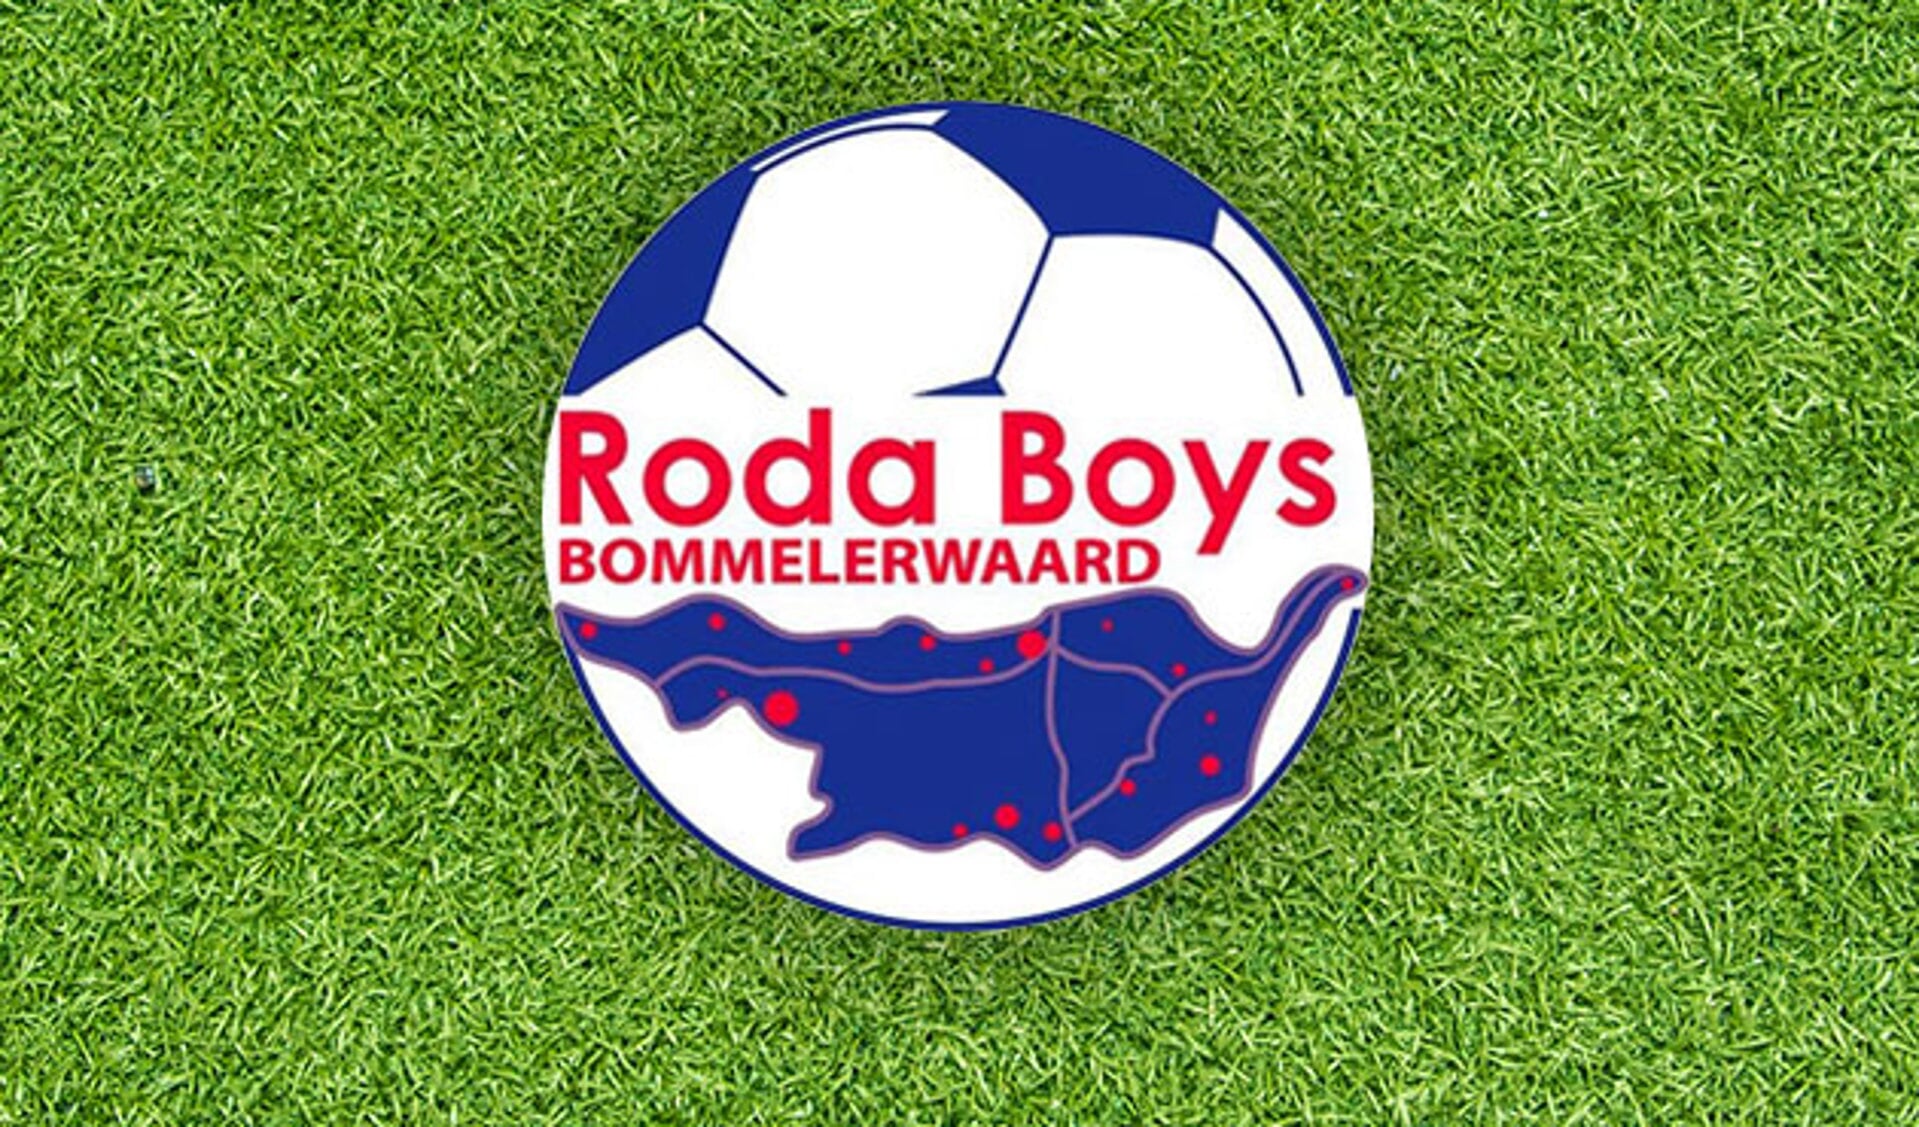 Het Kontakt-bokaal voor Roda Boys/Bommelerwaard meer dan een troostprijs